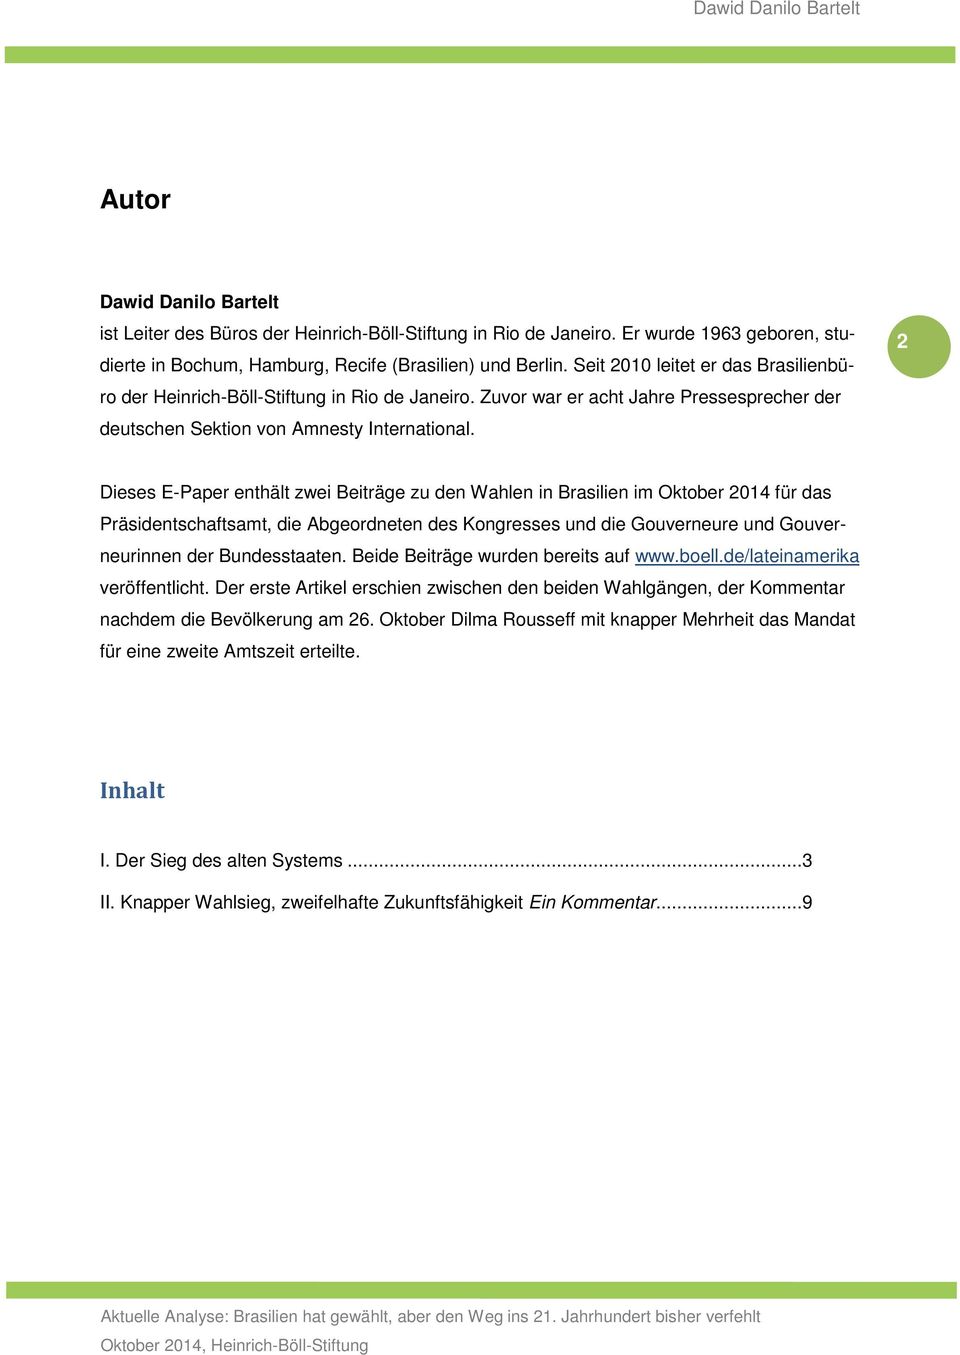 2 Dieses E-Paper enthält zwei Beiträge zu den Wahlen in Brasilien im Oktober 2014 für das Präsidentschaftsamt, die Abgeordneten des Kongresses und die Gouverneure und Gouverneurinnen der